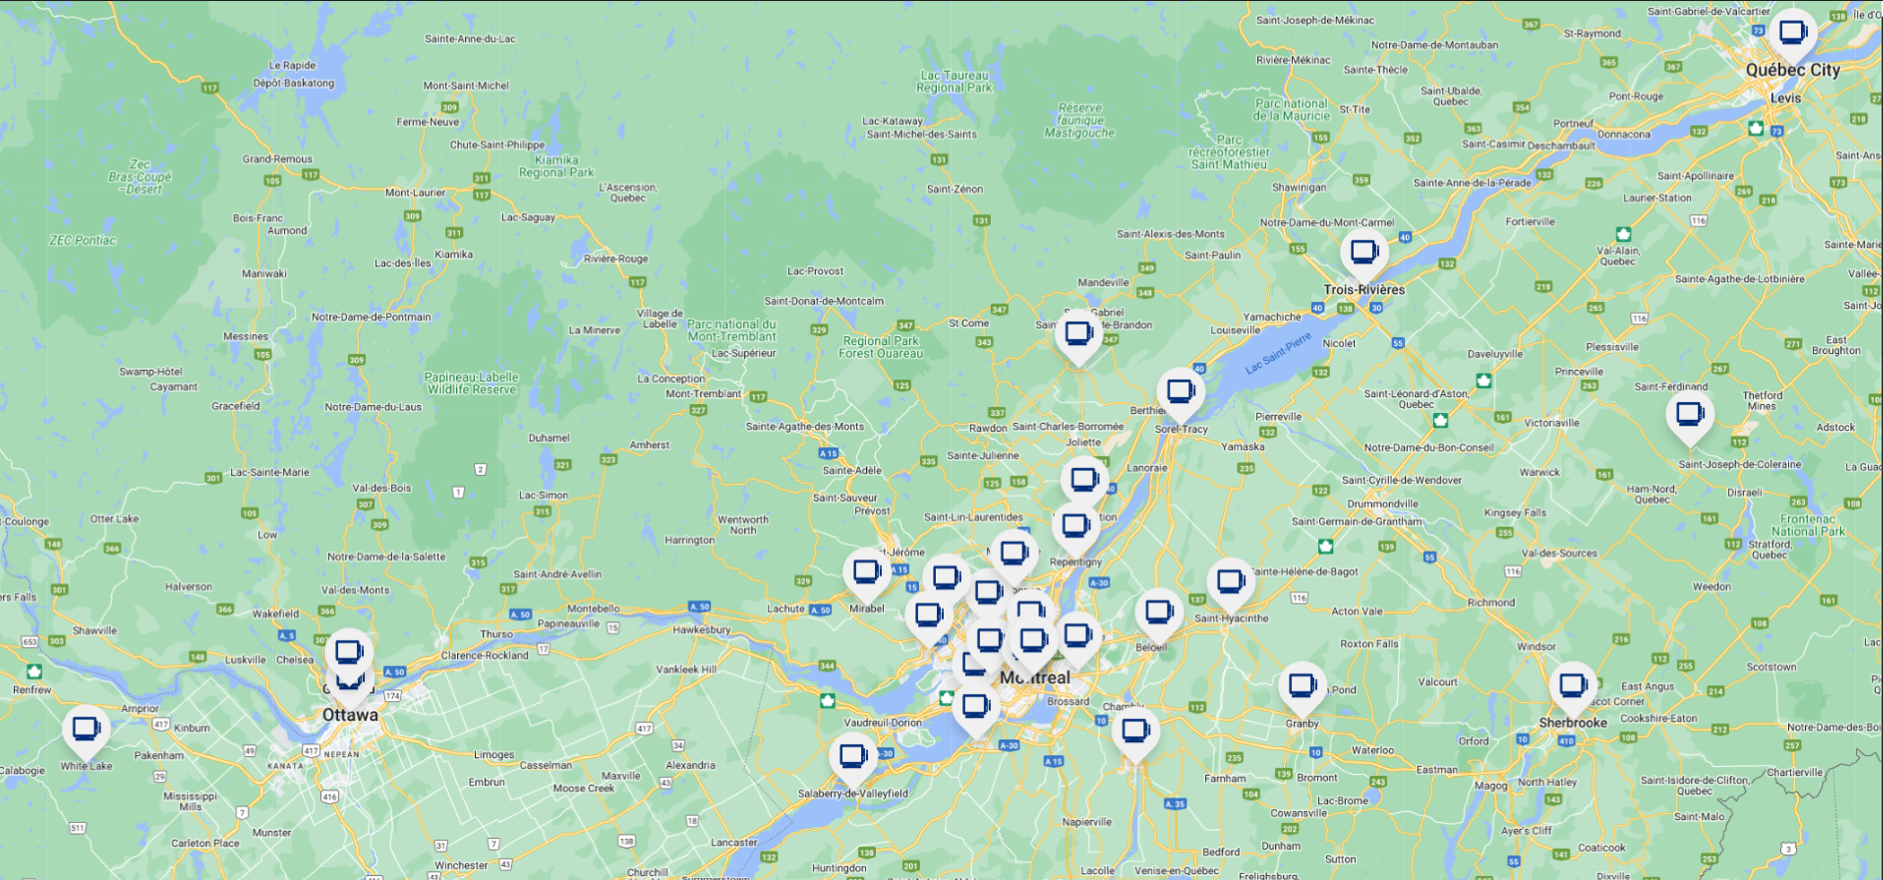 Carte du Québec contenant les villes identifiées par HauteTechOrientale